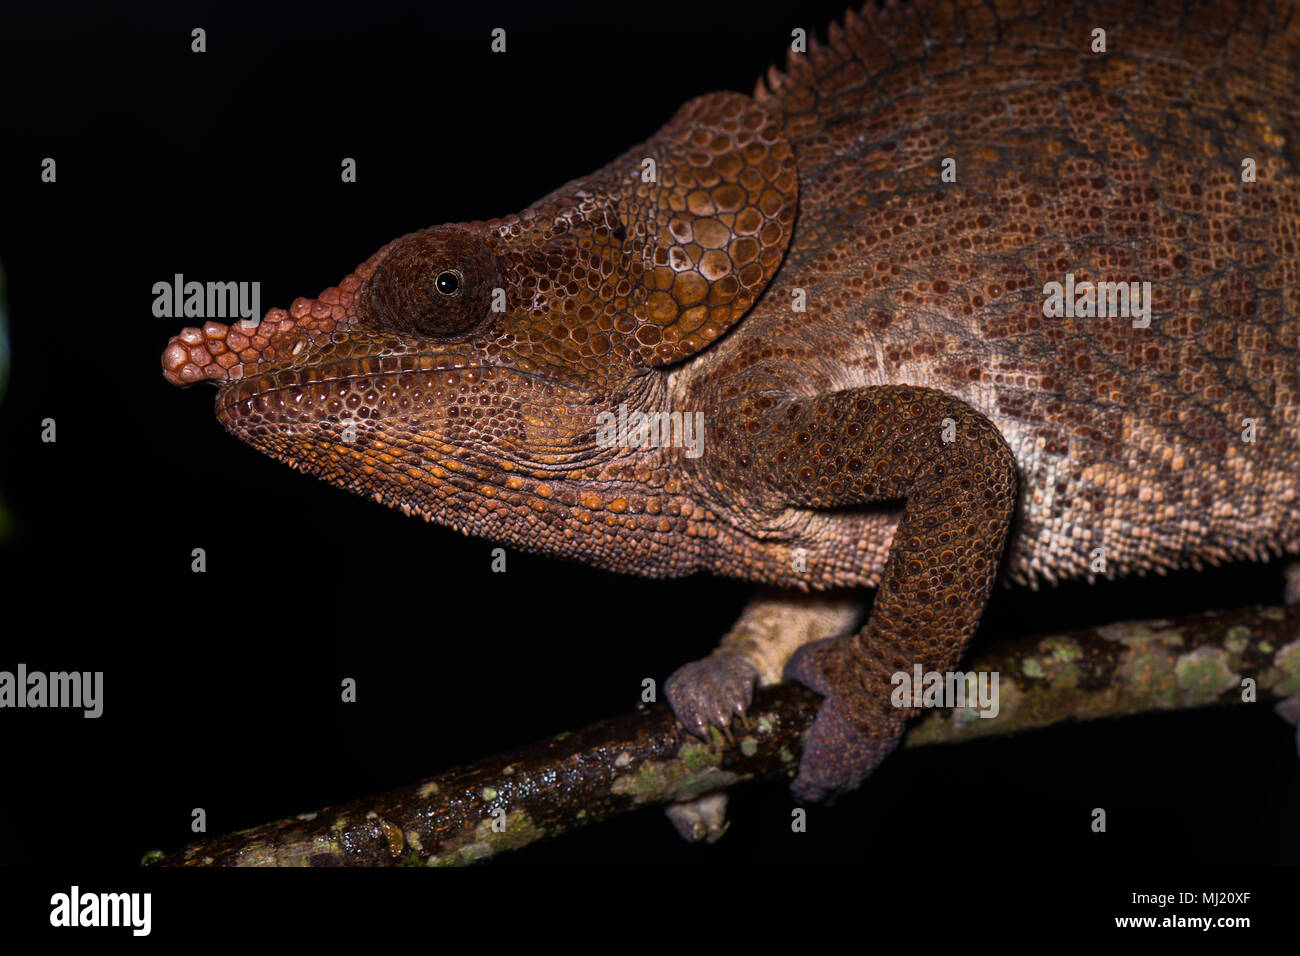 Short-horned chameleon (Calumma brevicorne), male, animal portrait, Analamazoatra, Andasibe National Park, Madagascar Stock Photo